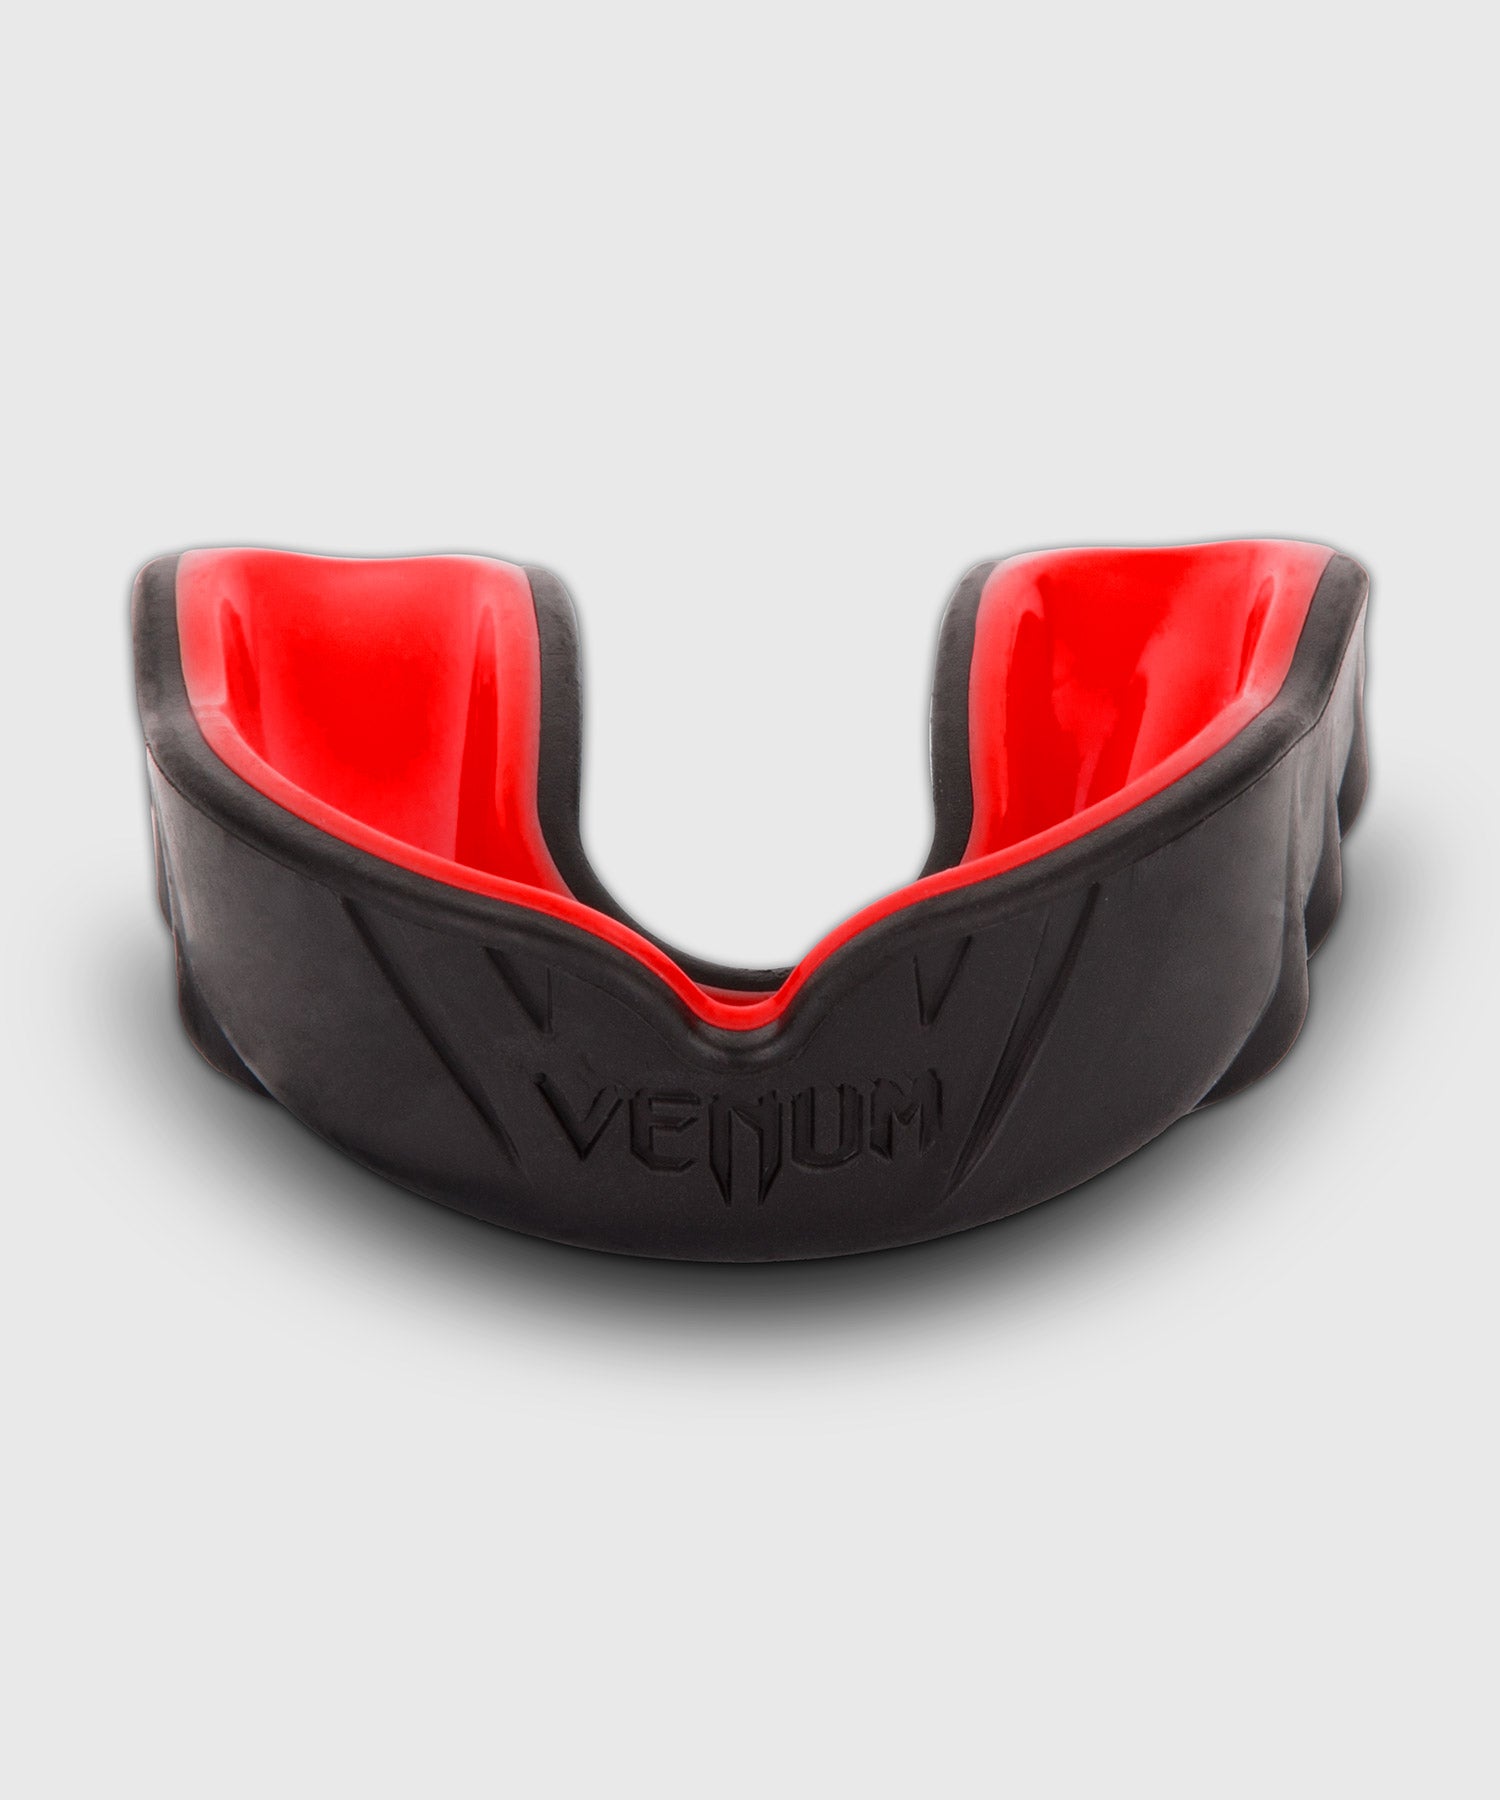 Protège-dents Venum Challenger - Noir/Rouge – Venum France